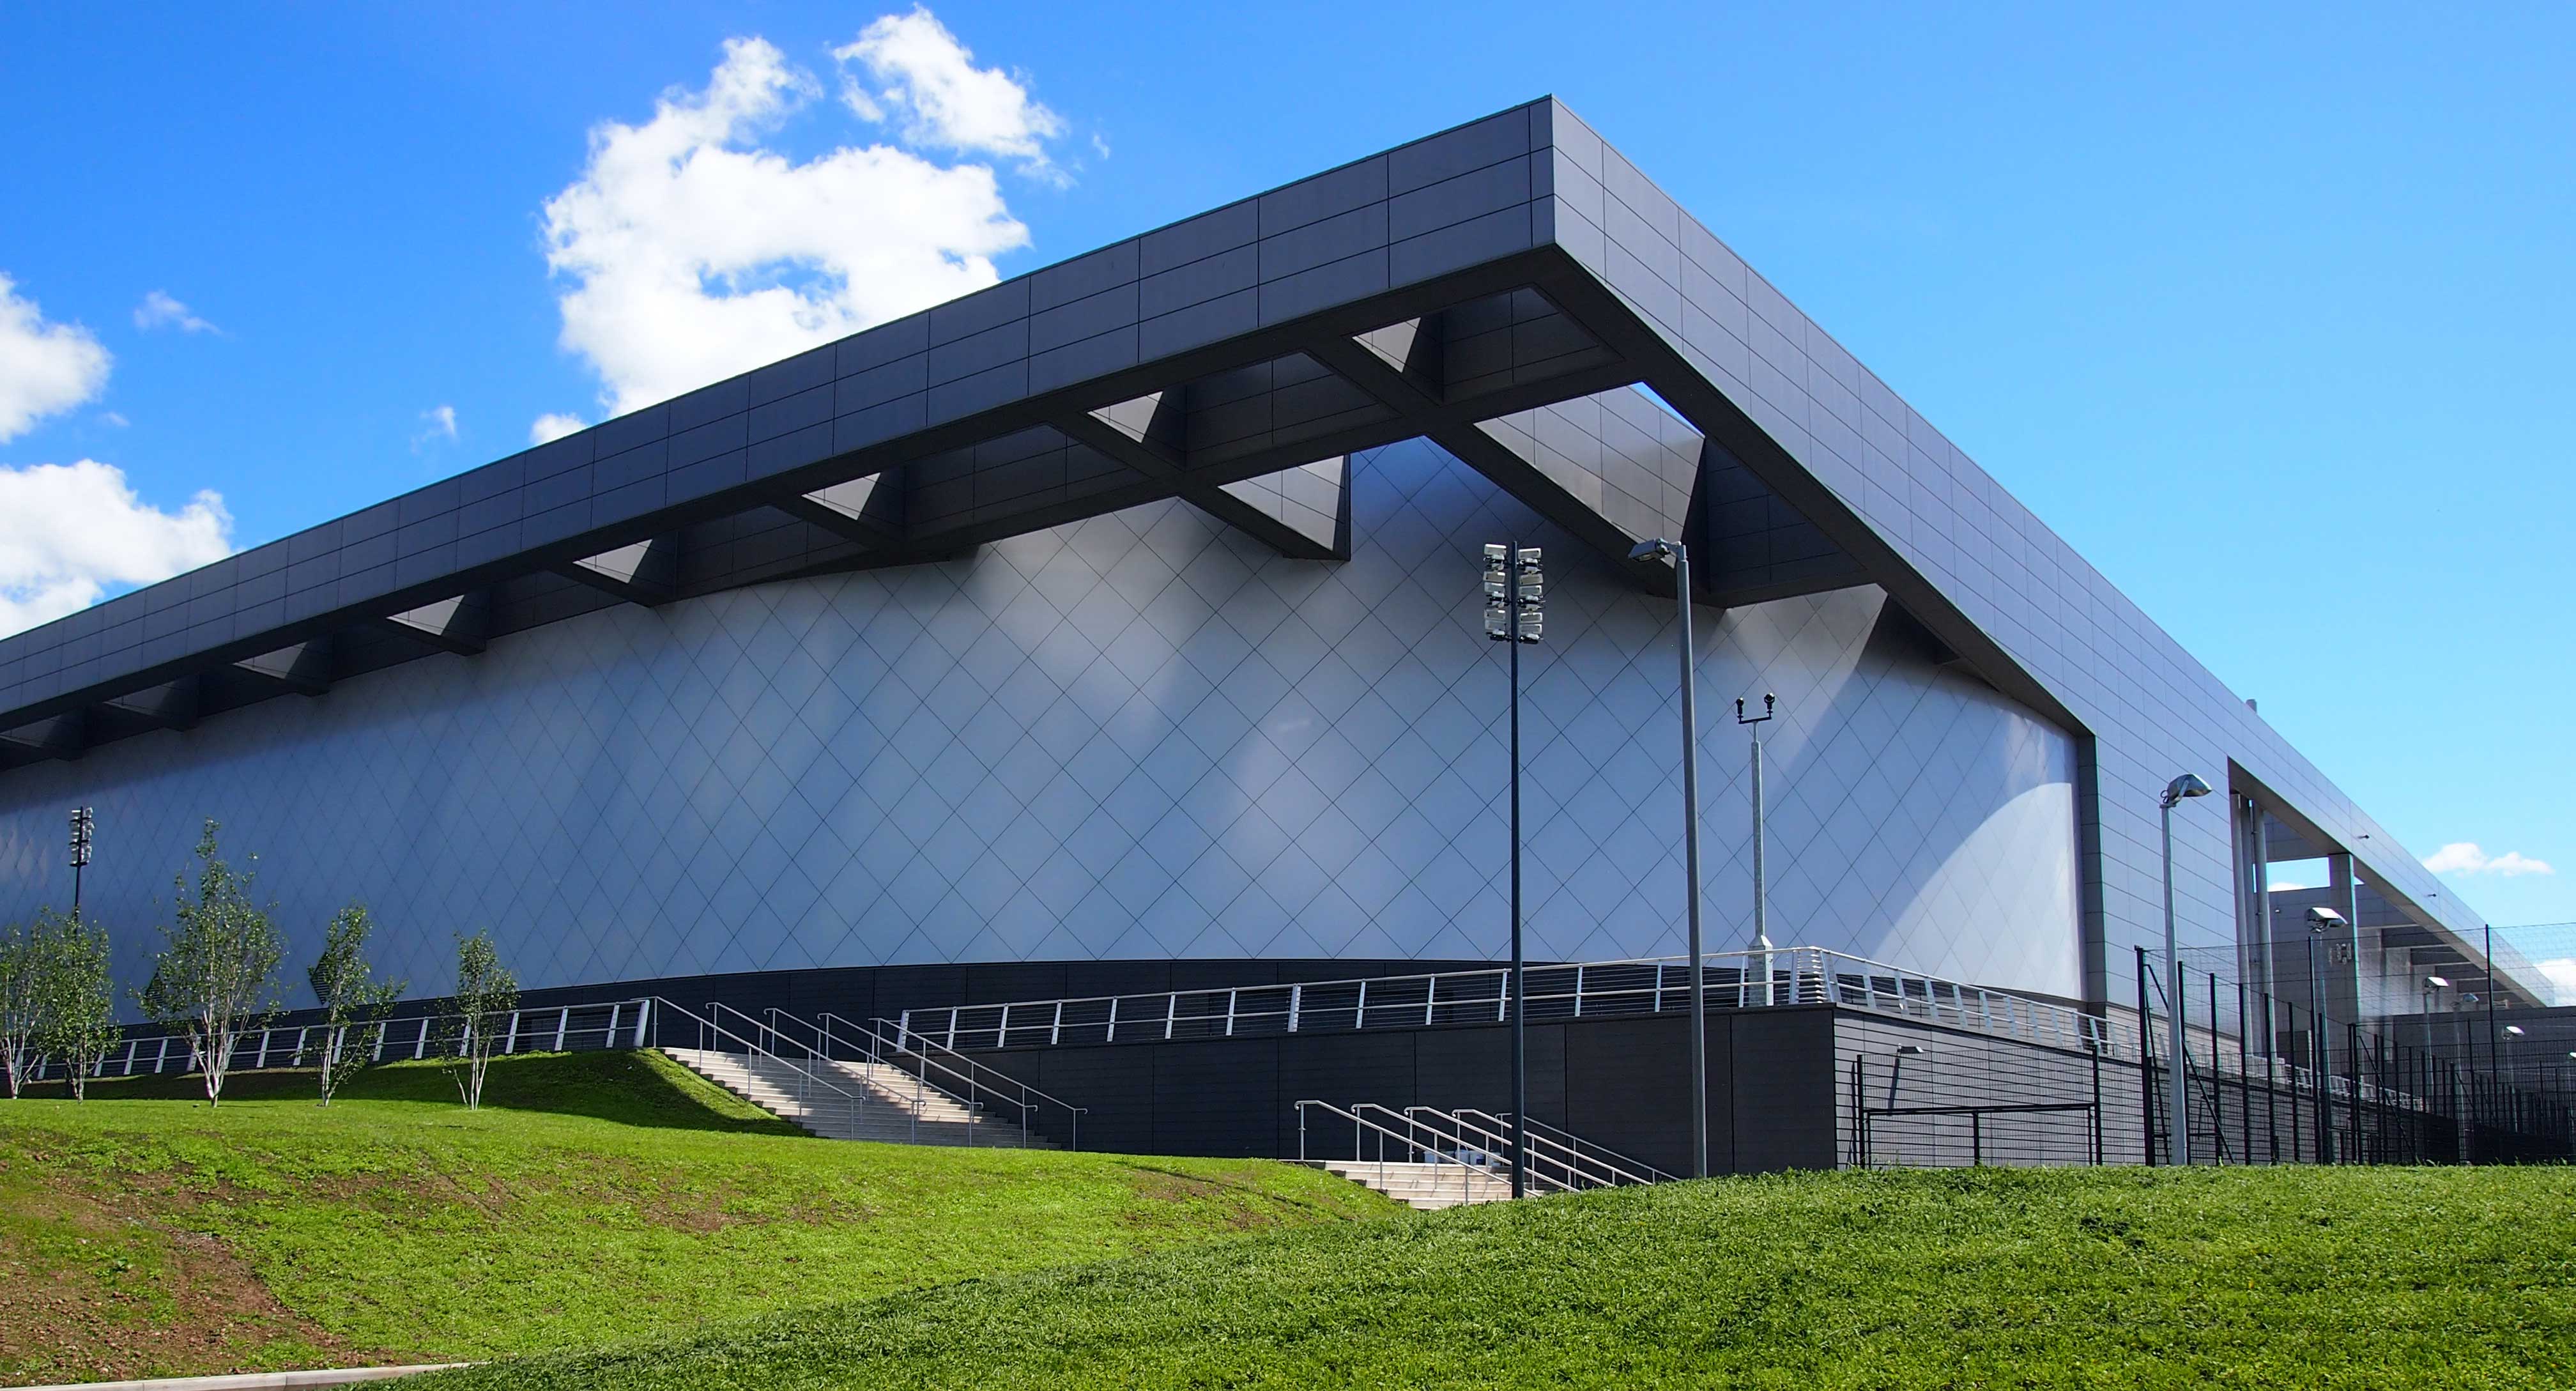 Commonwealth Arena Glasgow